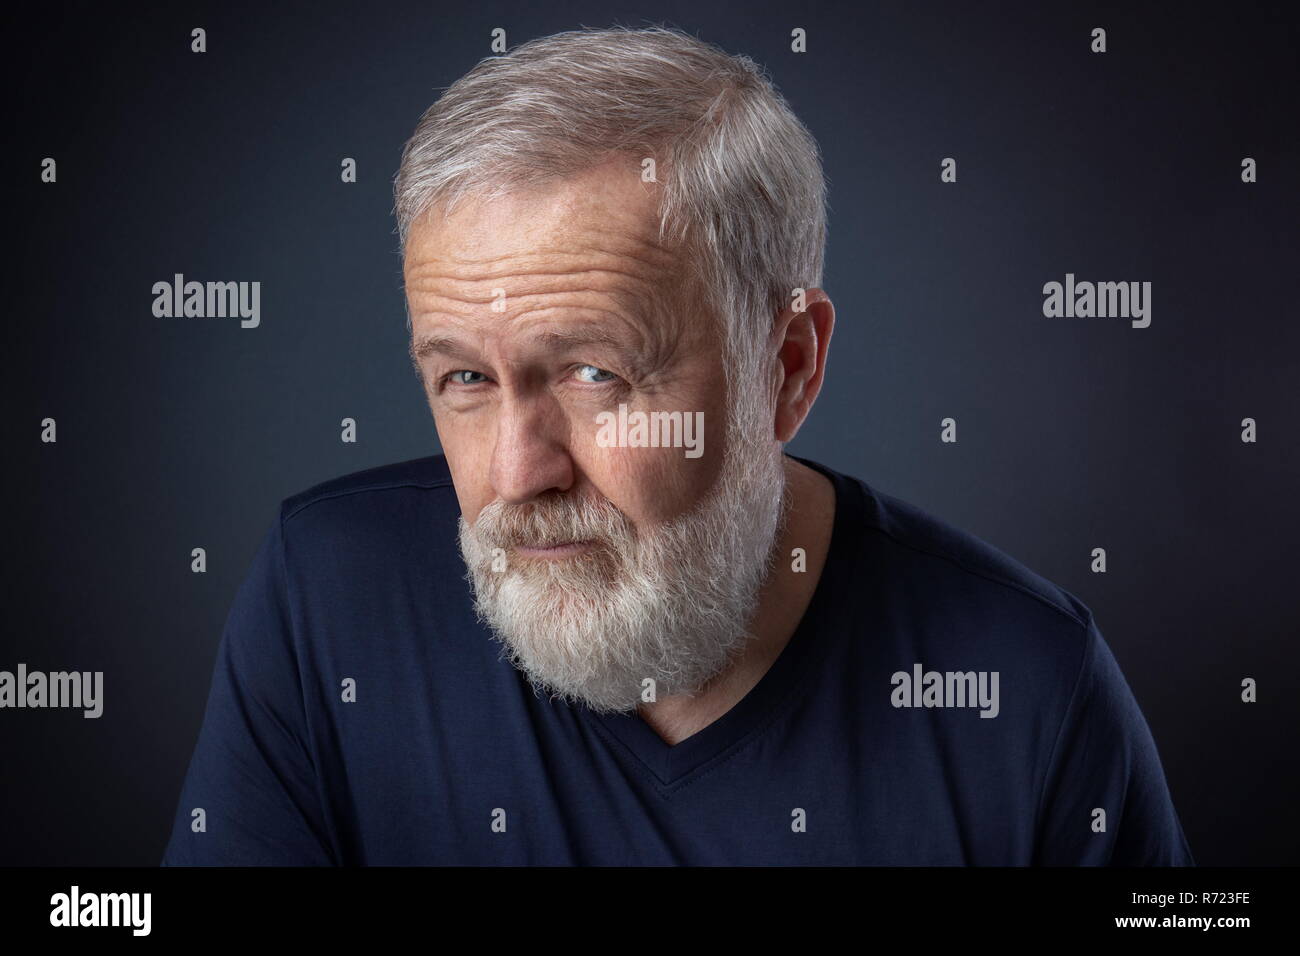 Retrato de anciano con barba gris y una profunda mirada Foto de stock